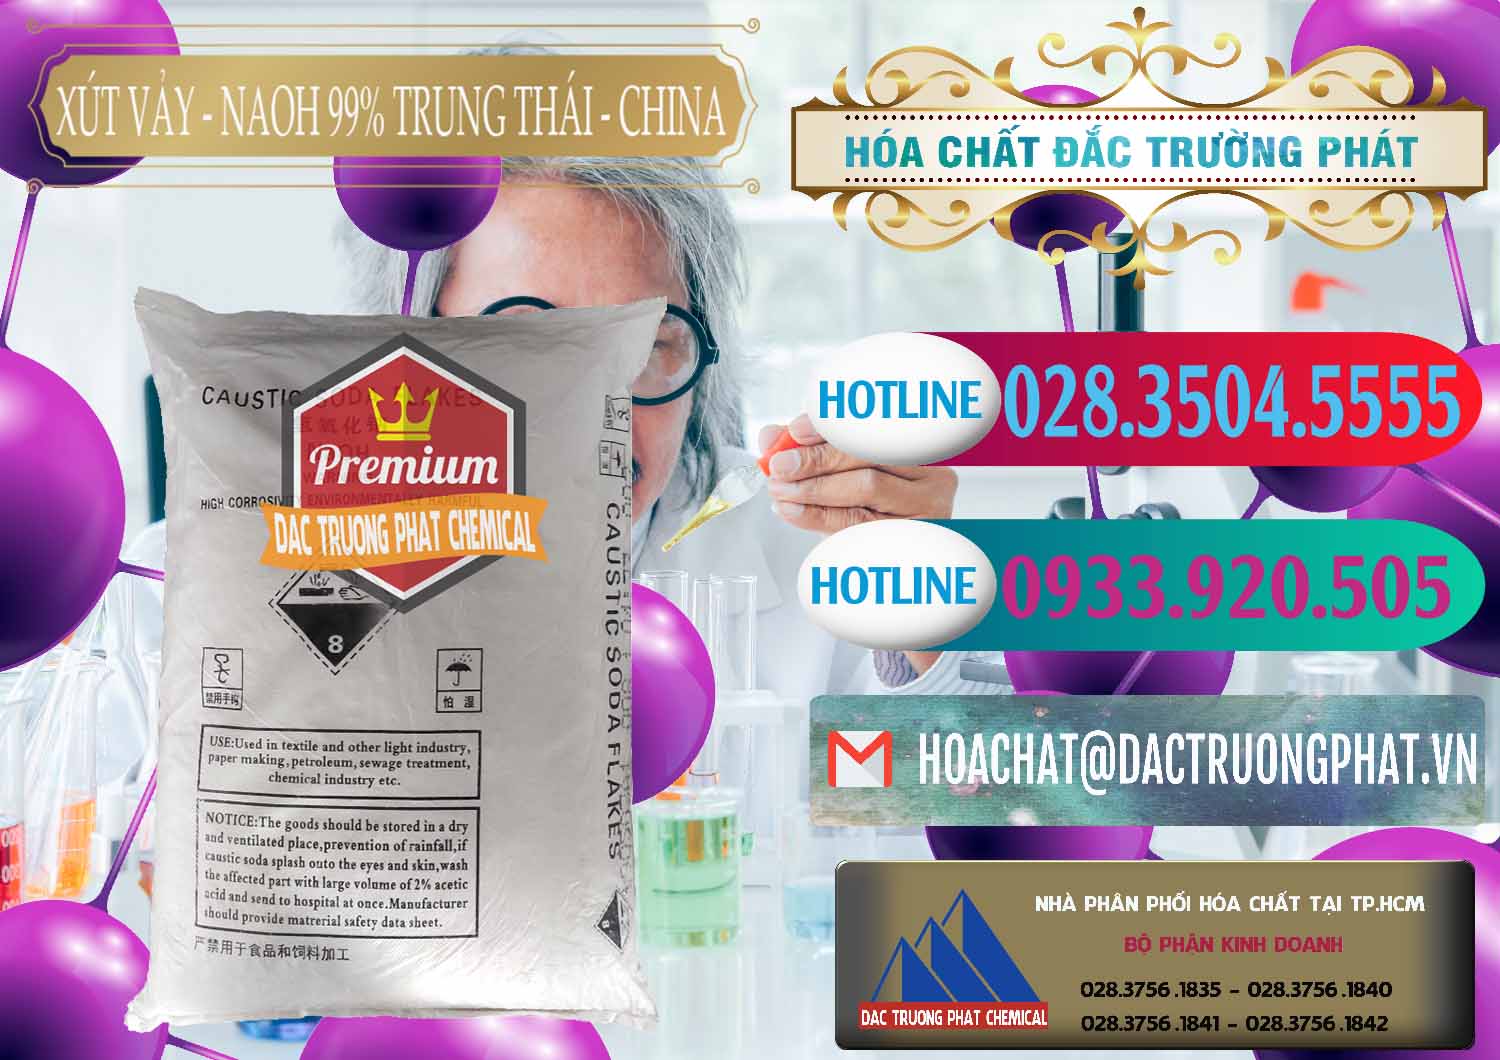 Chuyên phân phối - bán Xút Vảy - NaOH Vảy 99% Trung Thái China Trung Quốc - 0176 - Nơi chuyên kinh doanh _ phân phối hóa chất tại TP.HCM - truongphat.vn